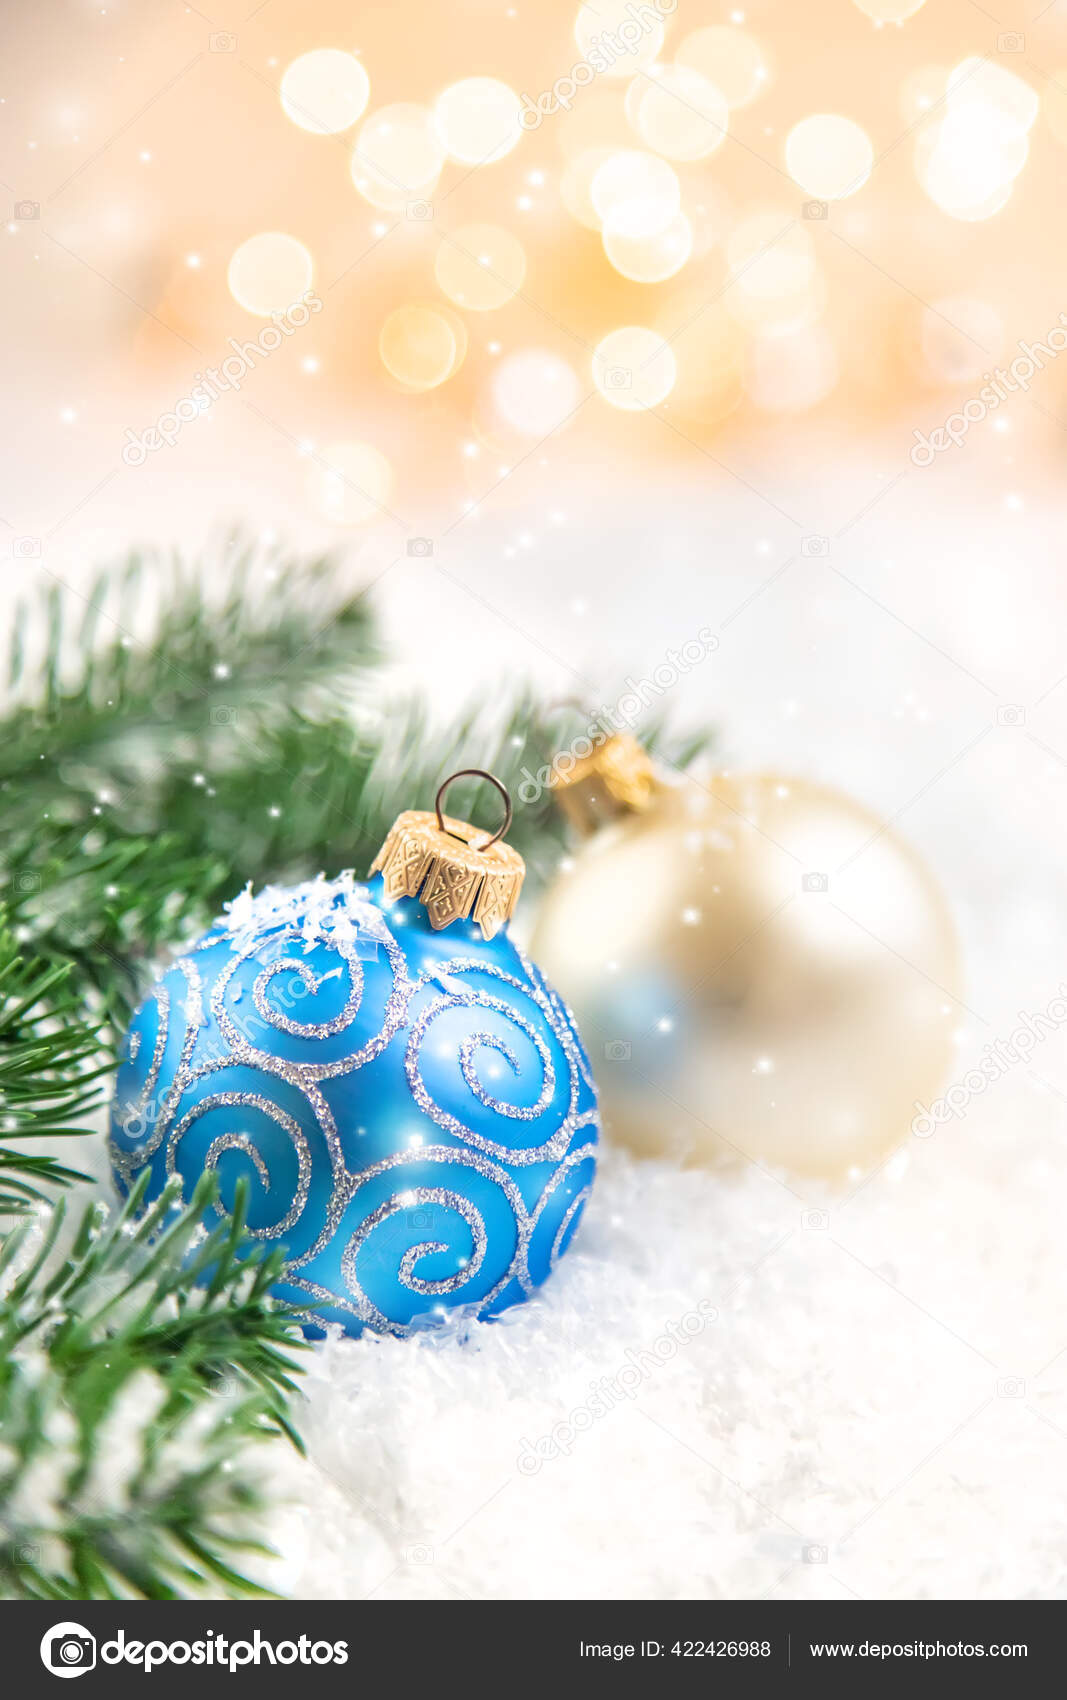 Weihnachten Hintergrund Und Schone Dekoration Neujahr Selektiver Fokus Urlaub Stockfotografie Lizenzfreie Fotos C Yana Komisarenko Yandex Ru Depositphotos